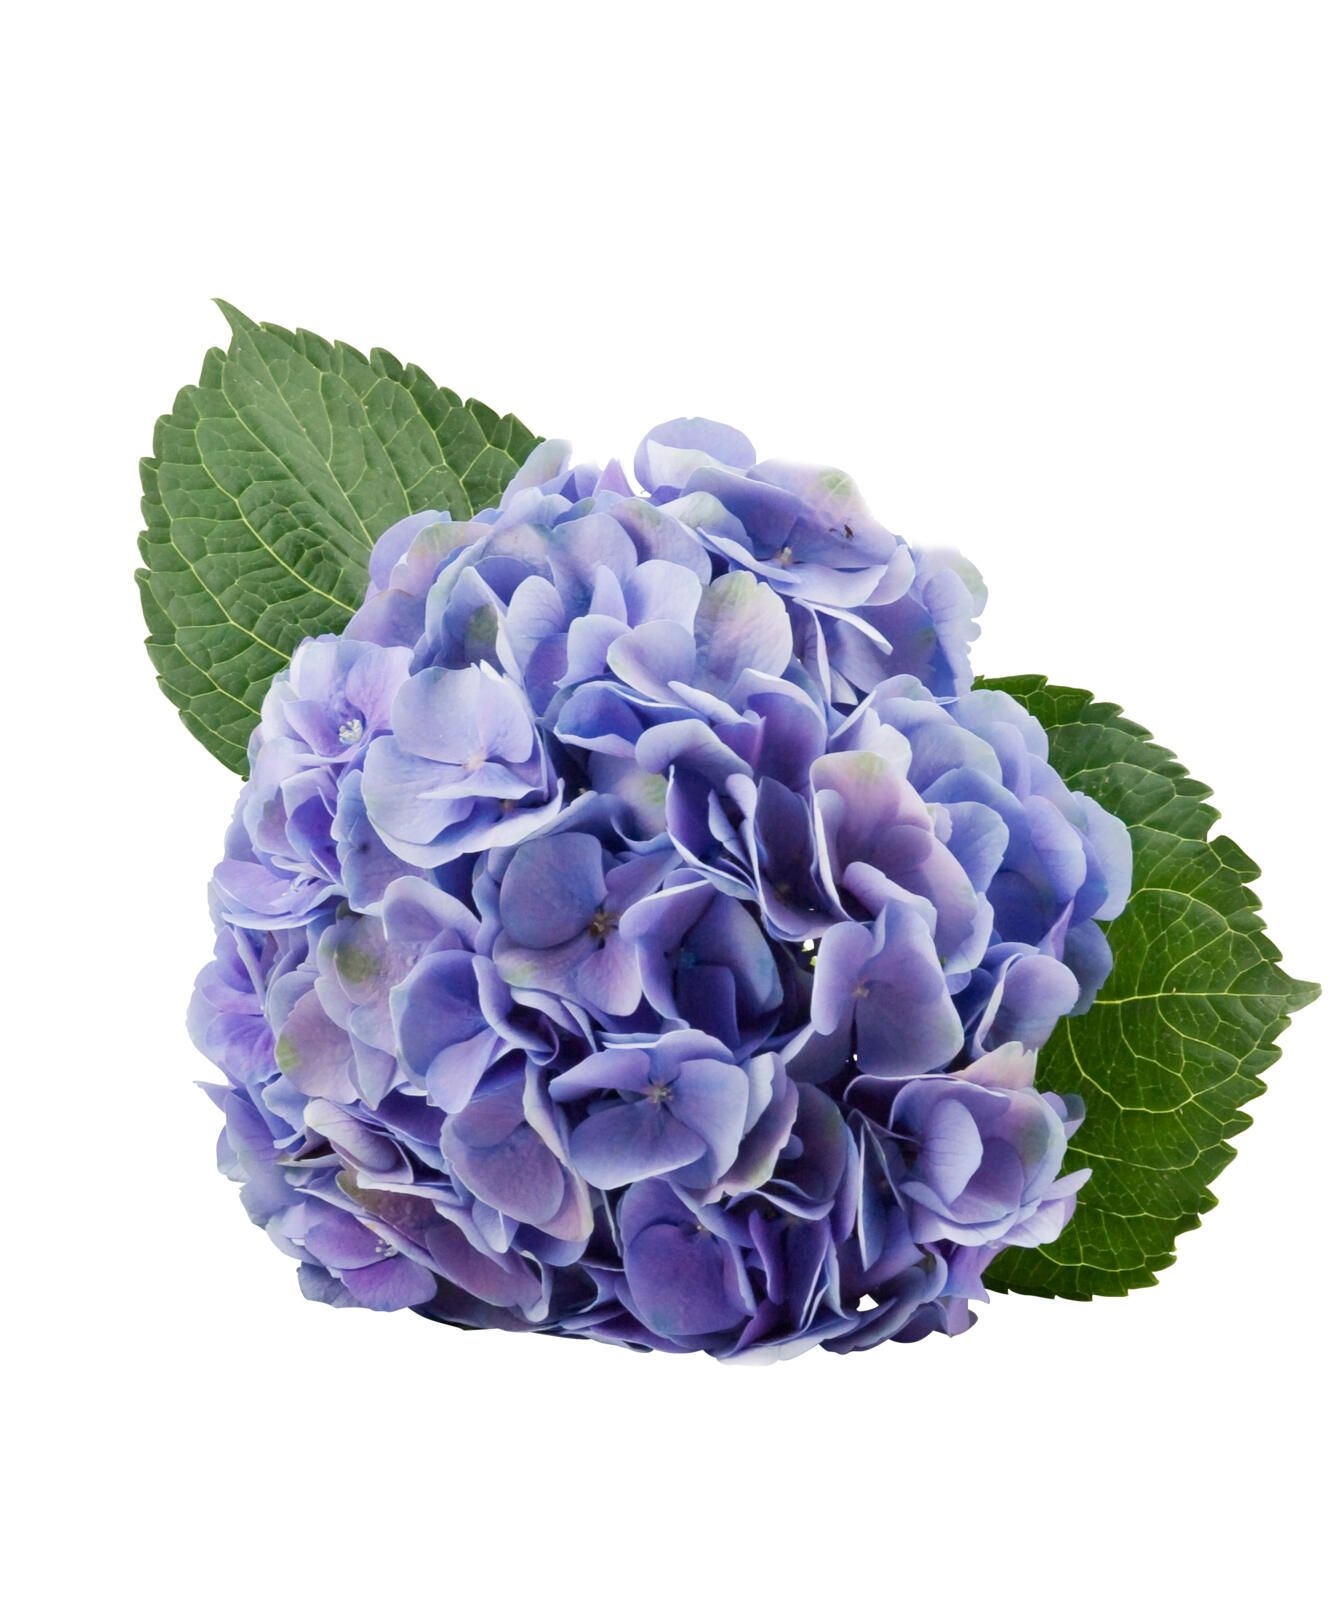 Savjeti za njegu cvijeta hortenzije